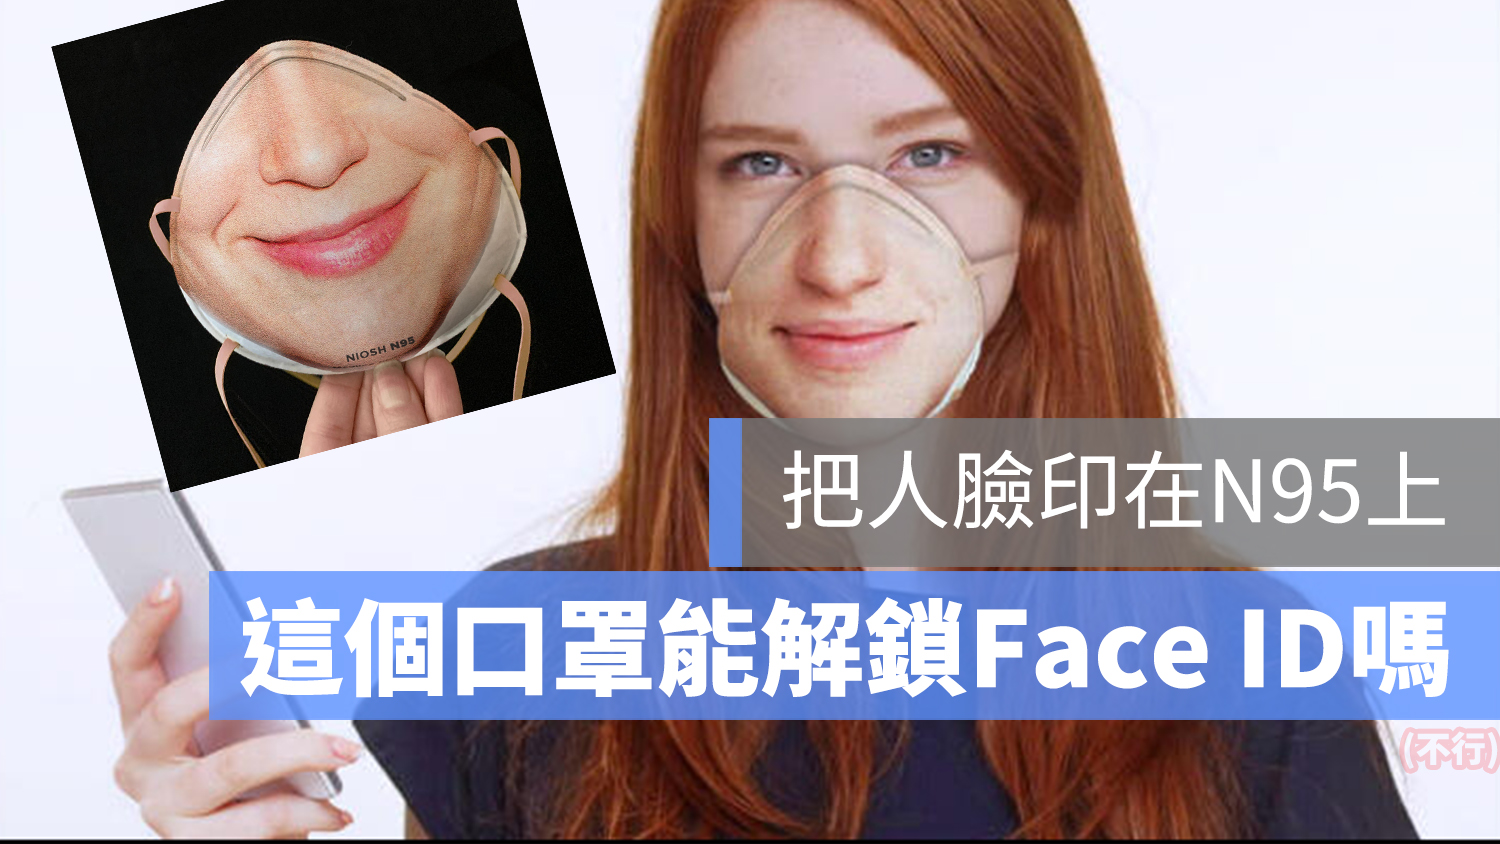 口罩 Face ID